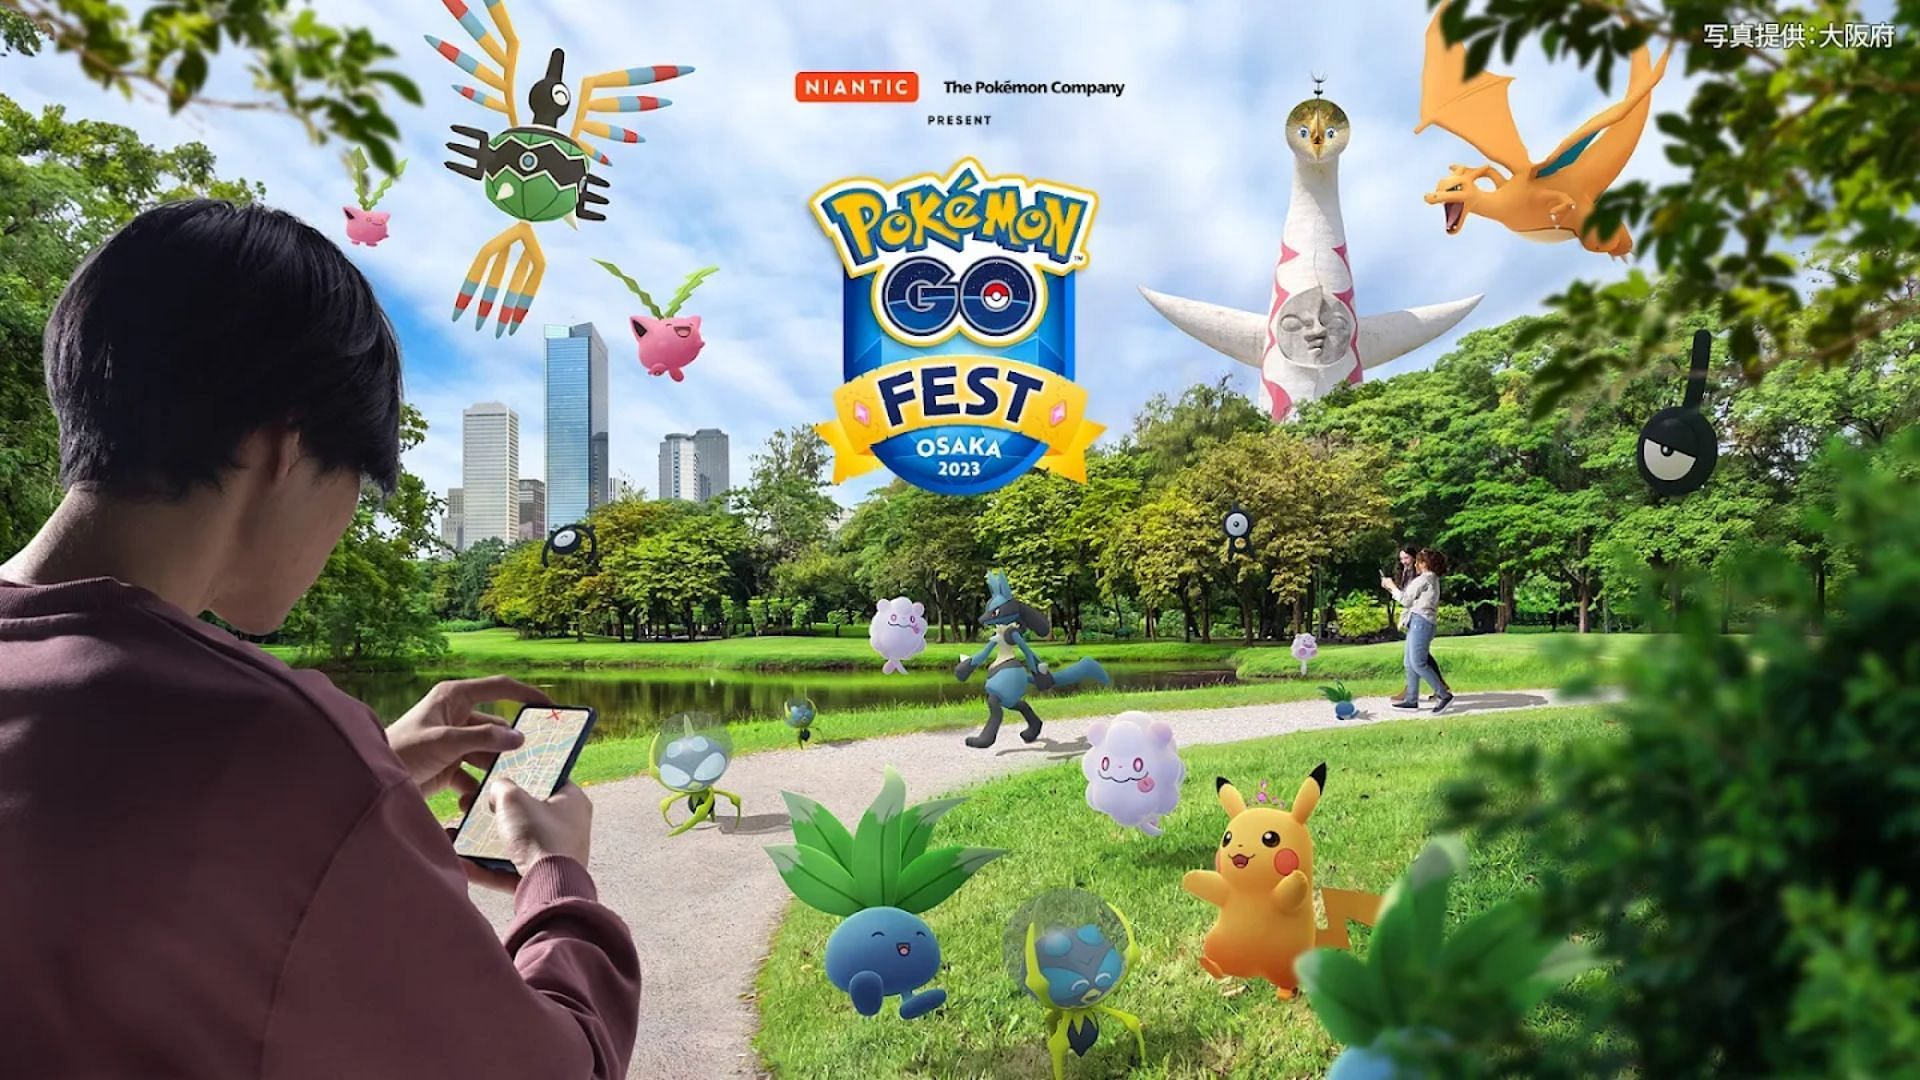 Pokémon GO Festival 2023: a worldwide adventure on August 26 and